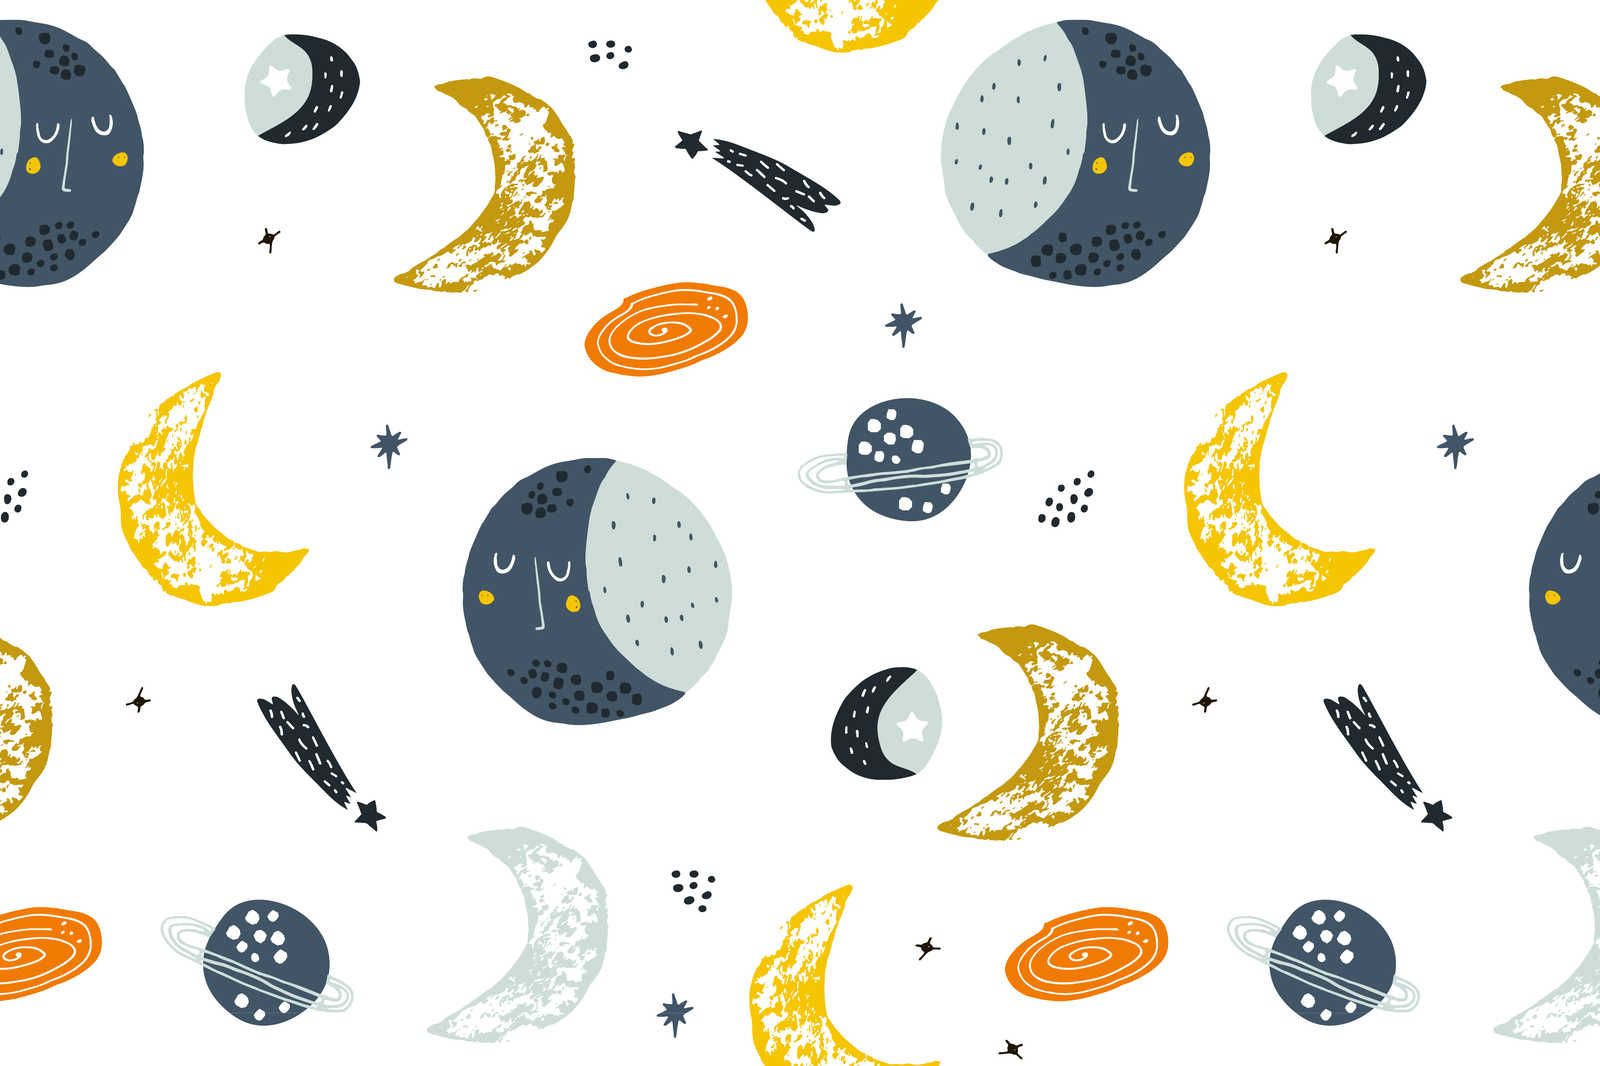             Lienzo con lunas y estrellas fugaces - 90 cm x 60 cm
        